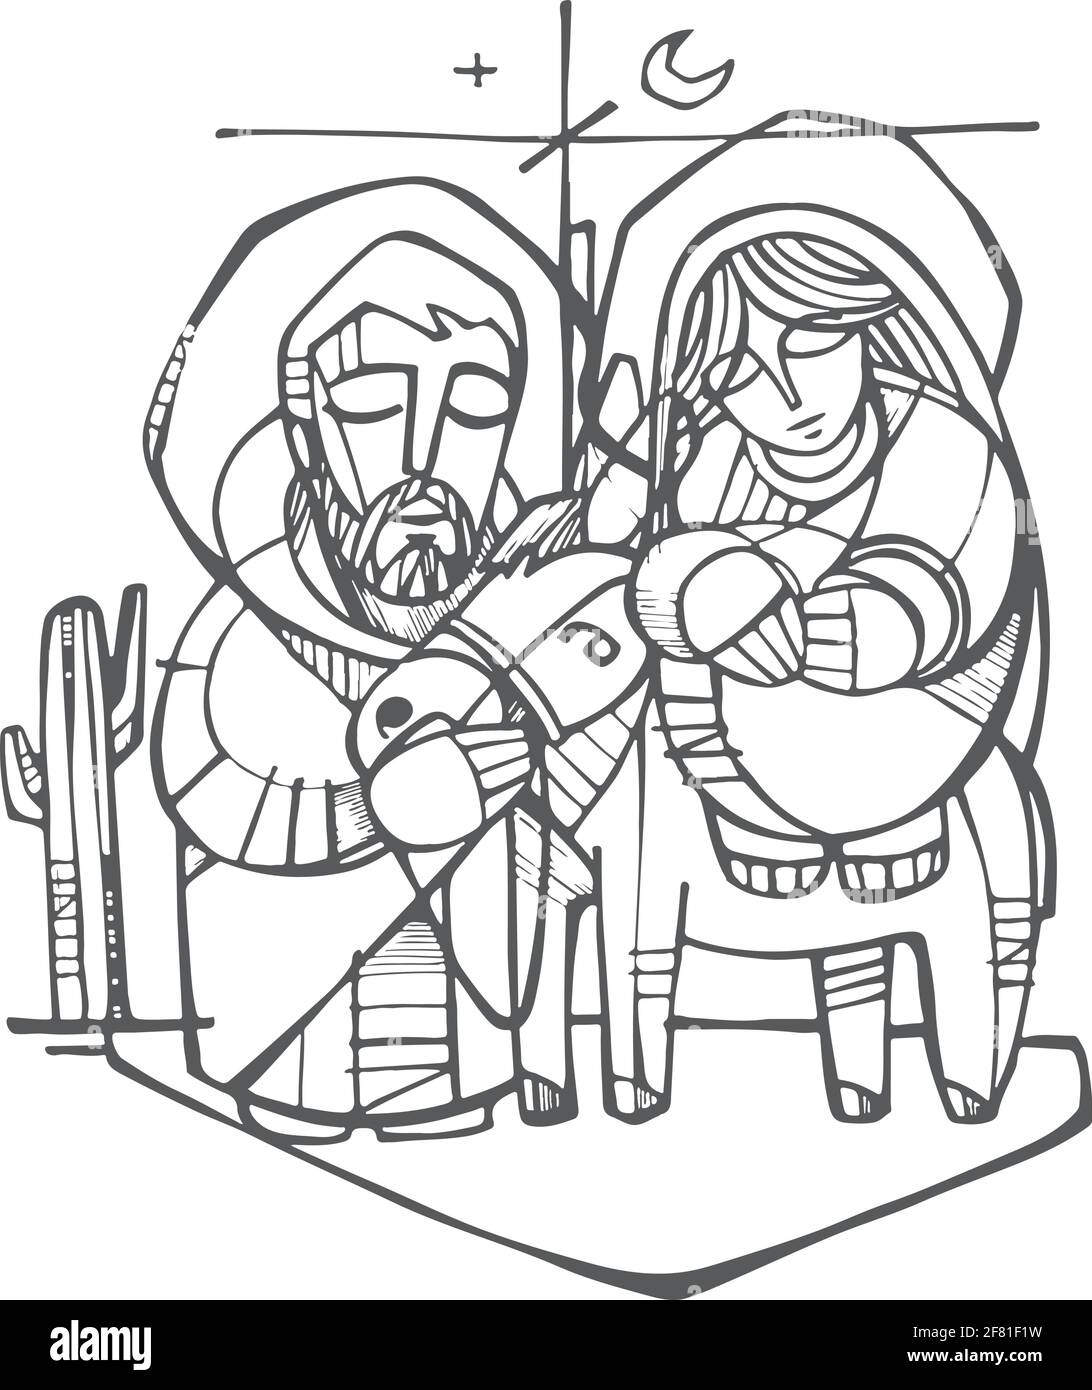 Handgezeichnete Vektorgrafik oder Zeichnung des Heiligen Joseph und Jungfrau Maria bei der Geburt Christi Stock Vektor